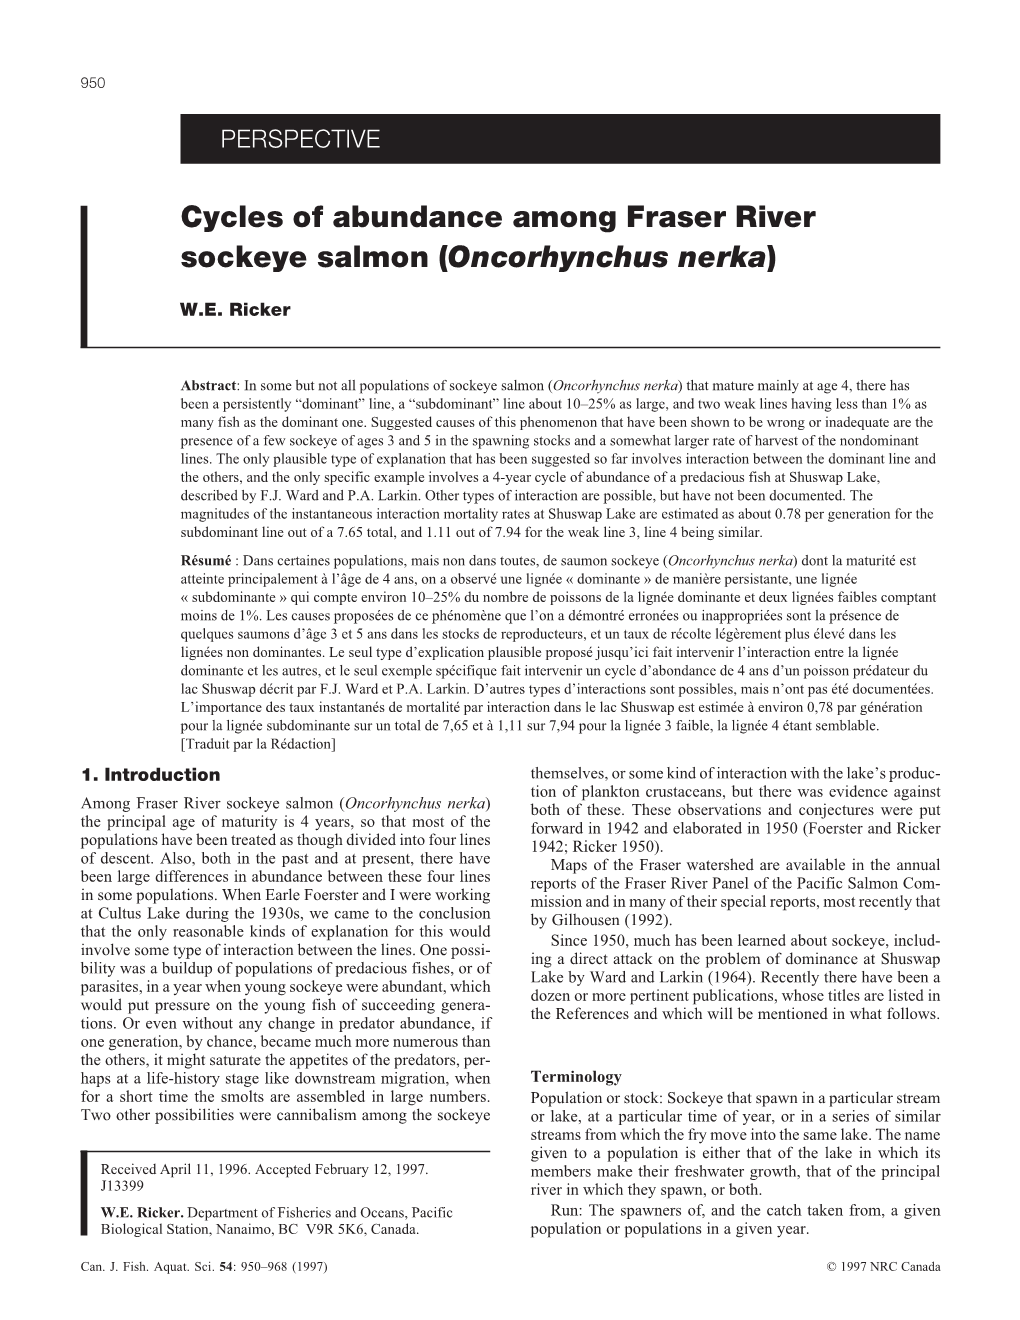 Cycles of Abundance Among Fraser River Sockeye Salmon (Oncorhynchus Nerka)